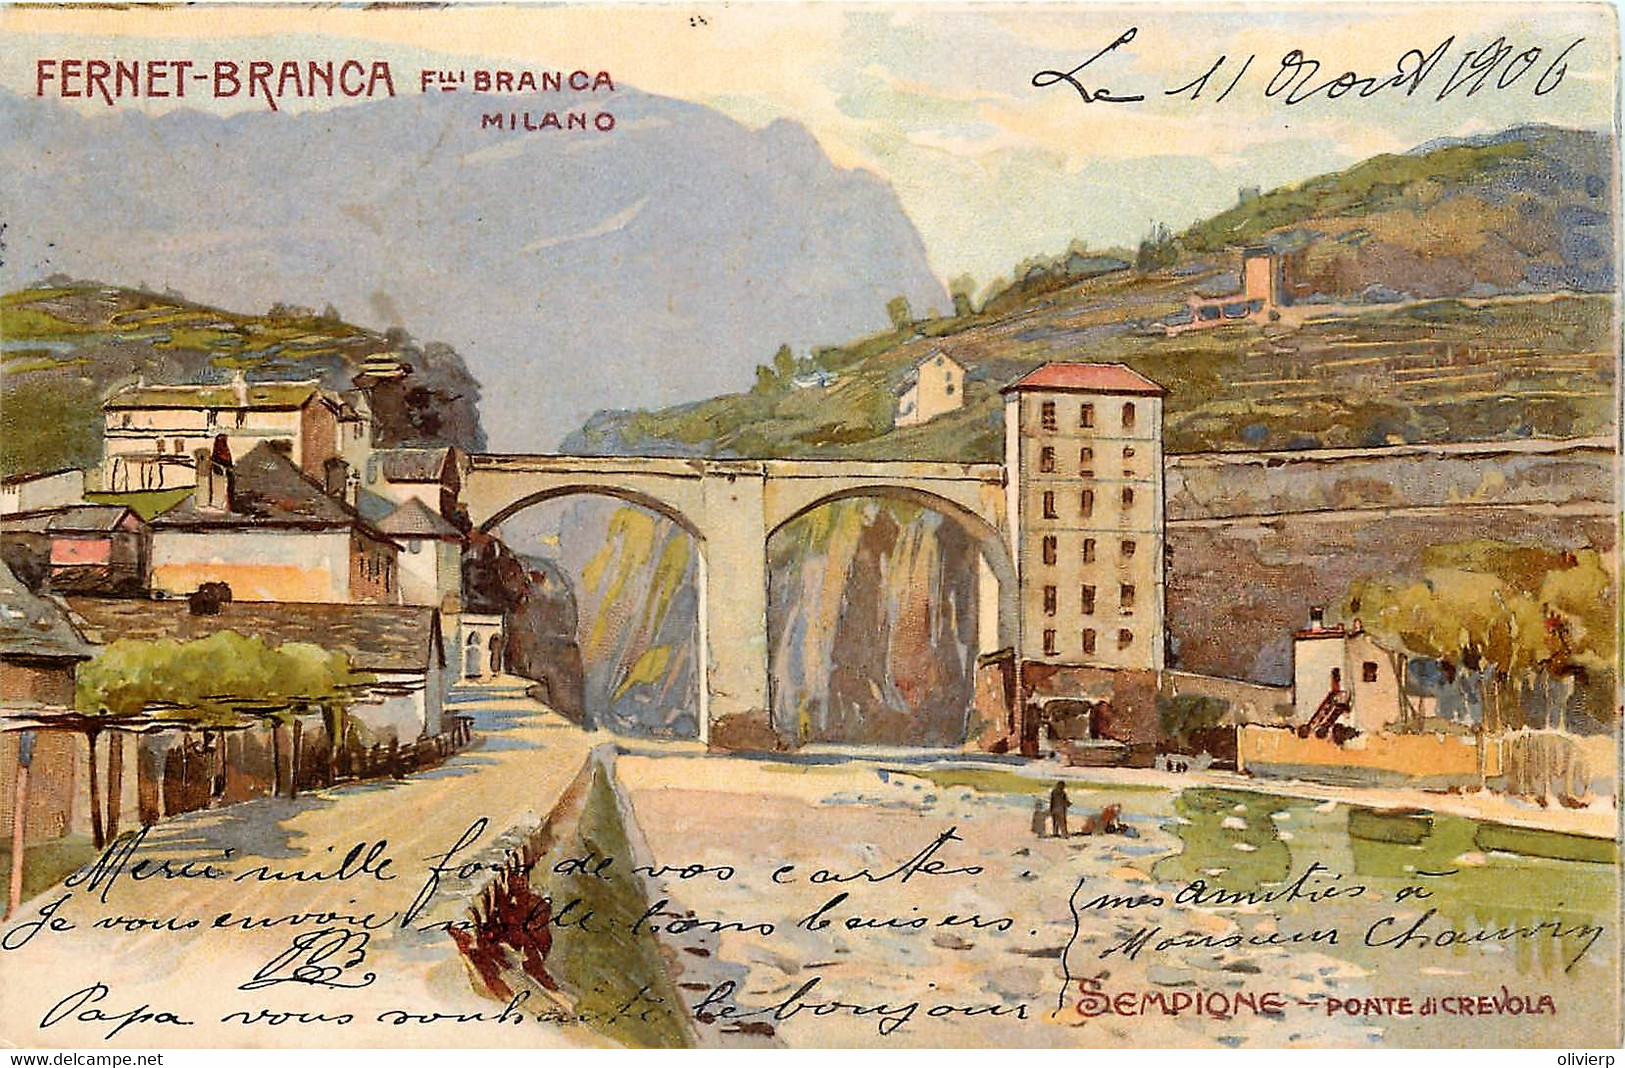 Italie - Litho - Pubblicità - Advertising - Fernet-Branca - Sempione - Ponte Ddi Crevola - Leopoldo Metlicovitz - Verbania